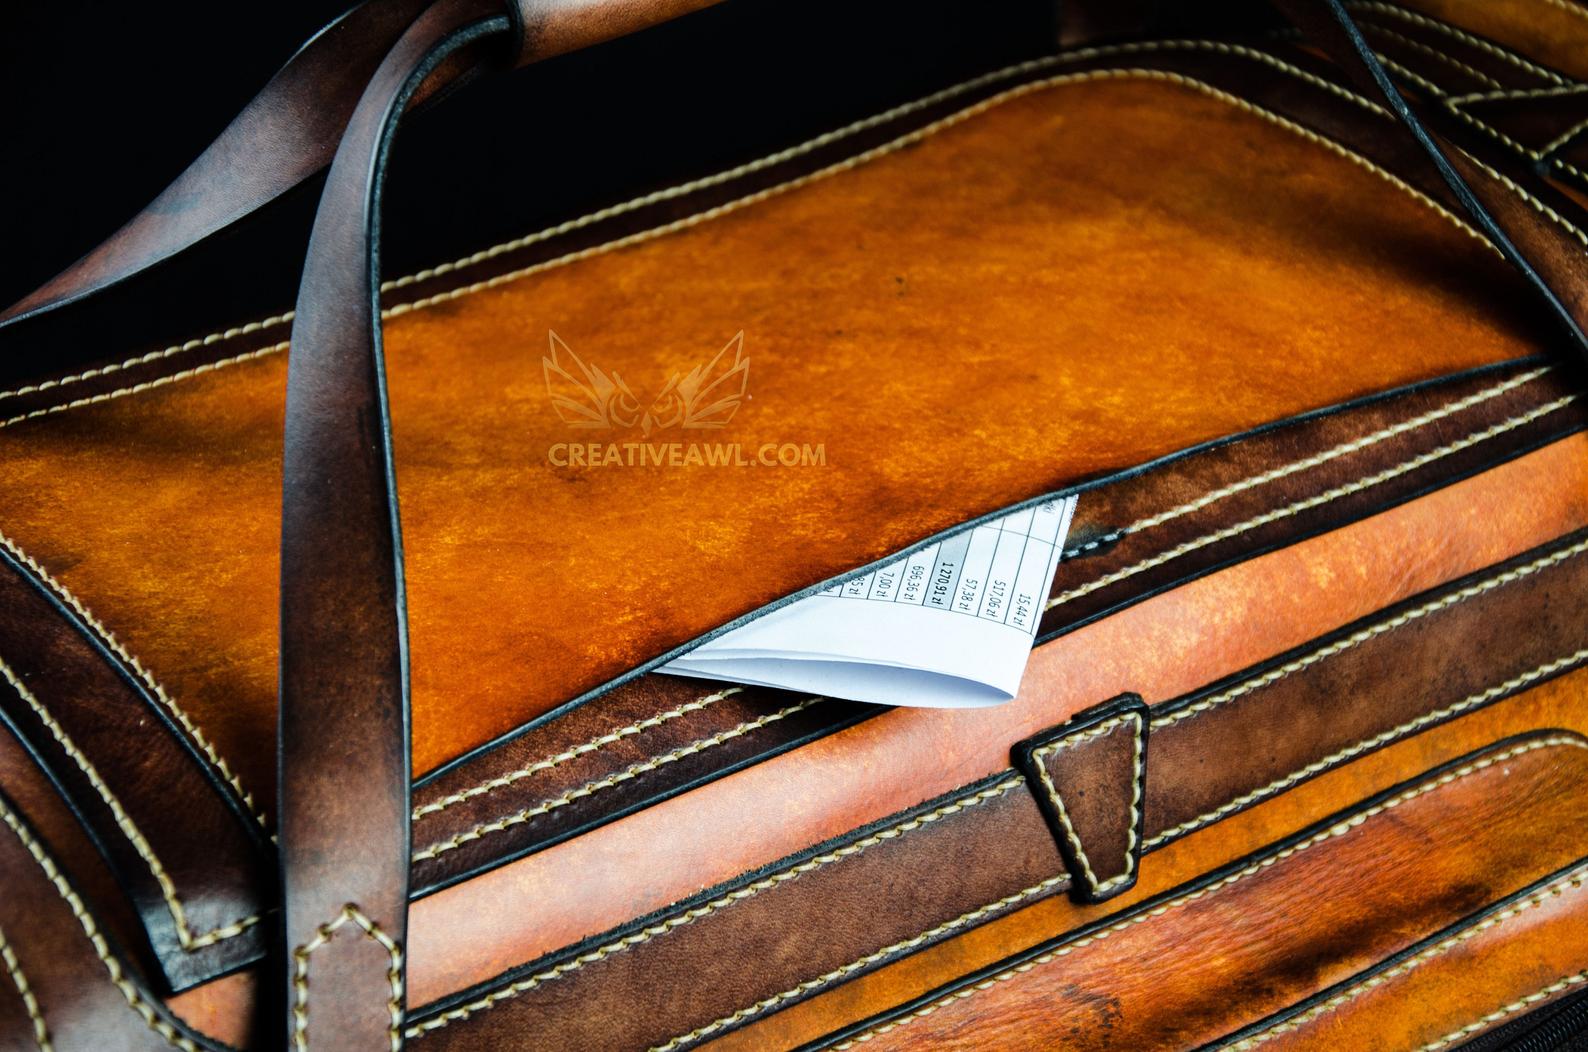 Jefferson Leather Duffle | Elderwood